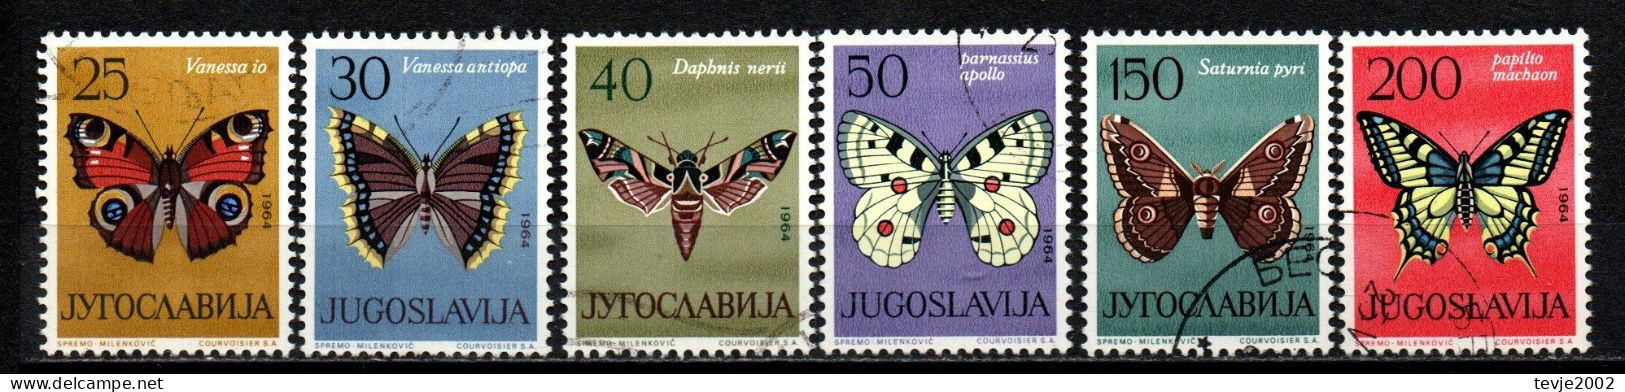 Jugoslawien 1964 - Mi.Nr. 1069 - 1074 - Gestempelt Used - Tiere Animals Schmetterlinge Butterflies - Butterflies